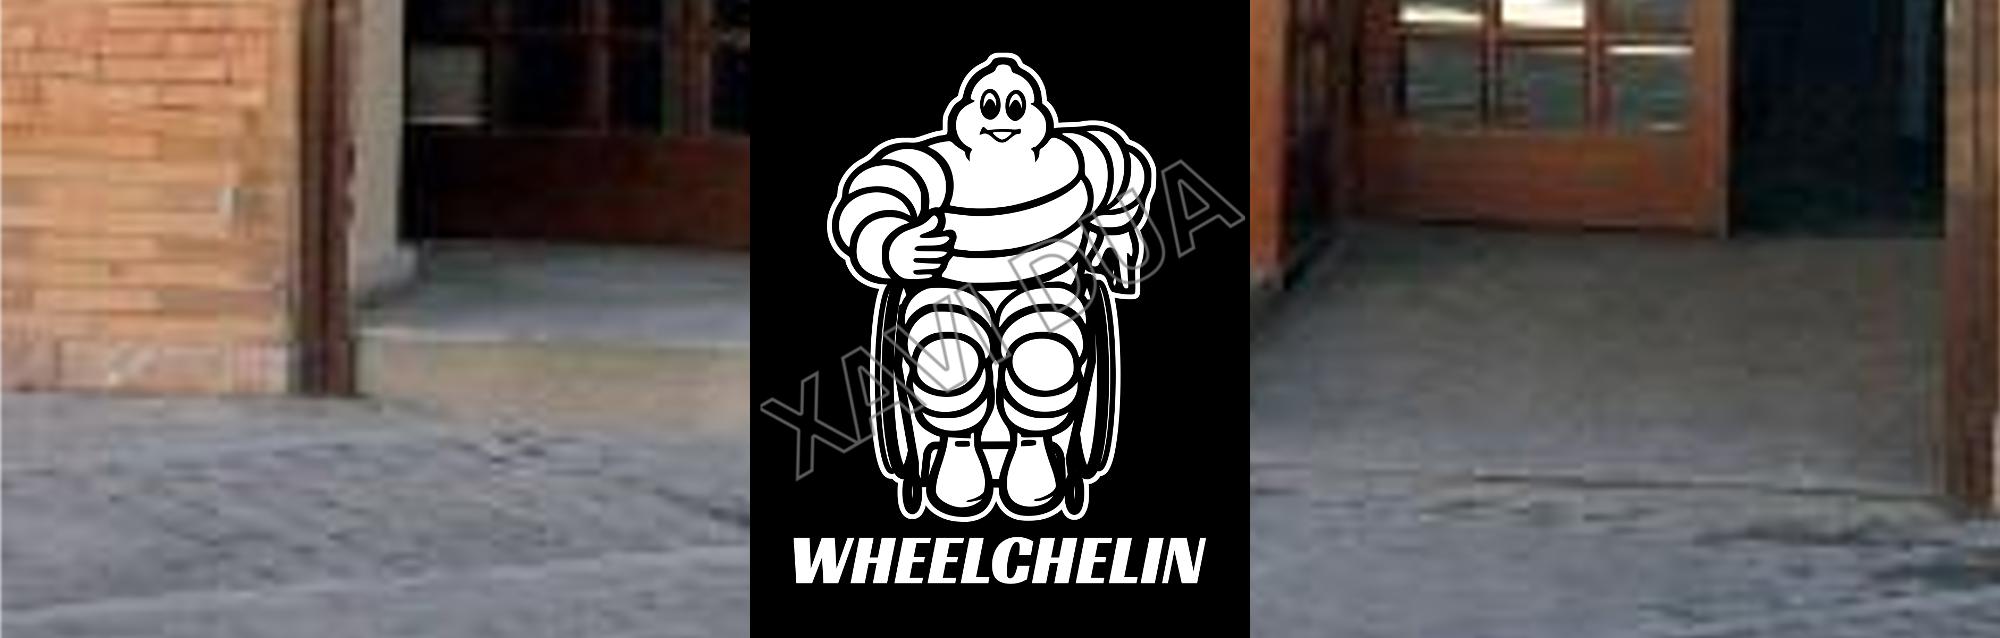 Cabecera guía wheelchelin